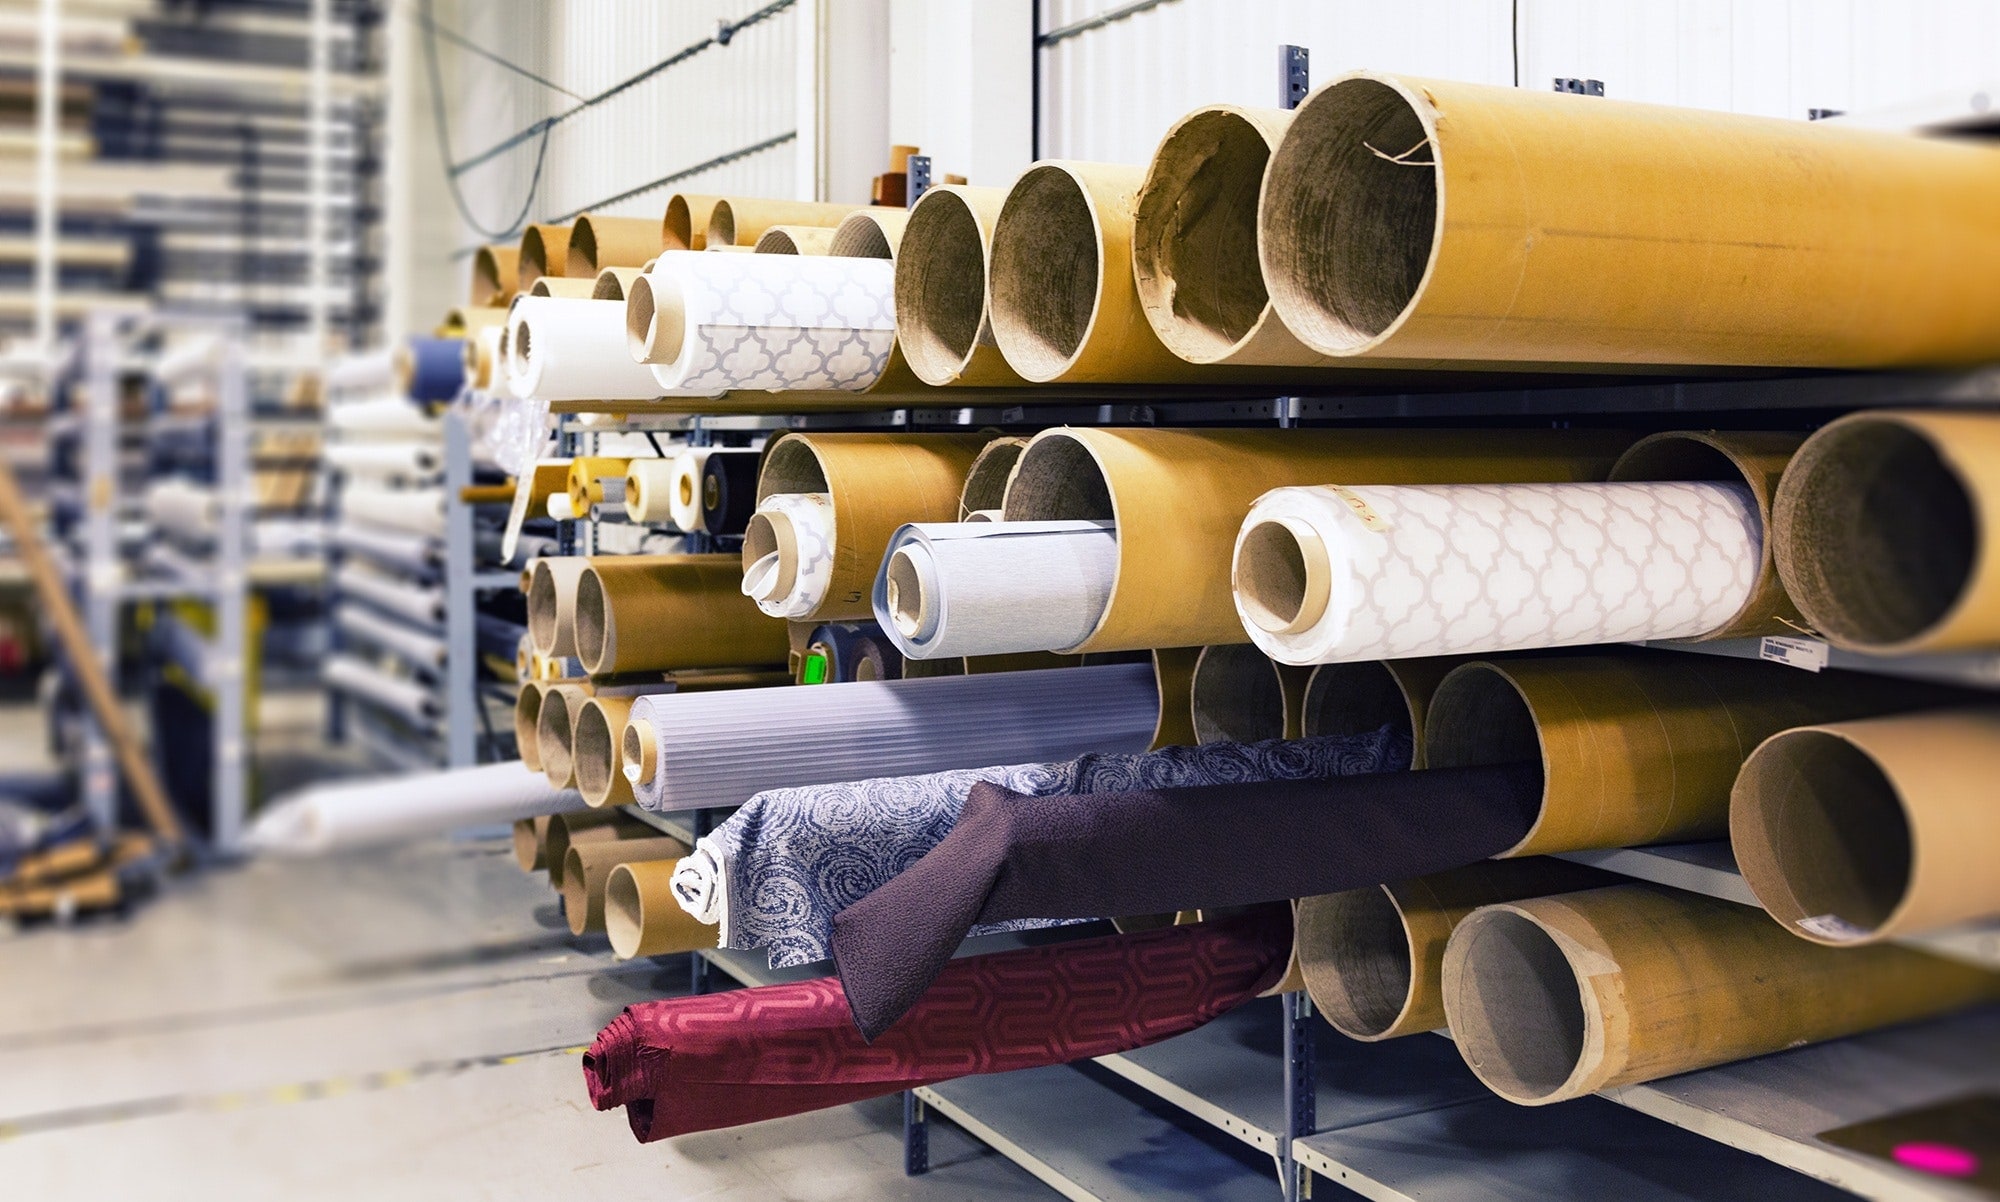 Goma Espuma – Insumos textiles para la Industria de la Confeccion.